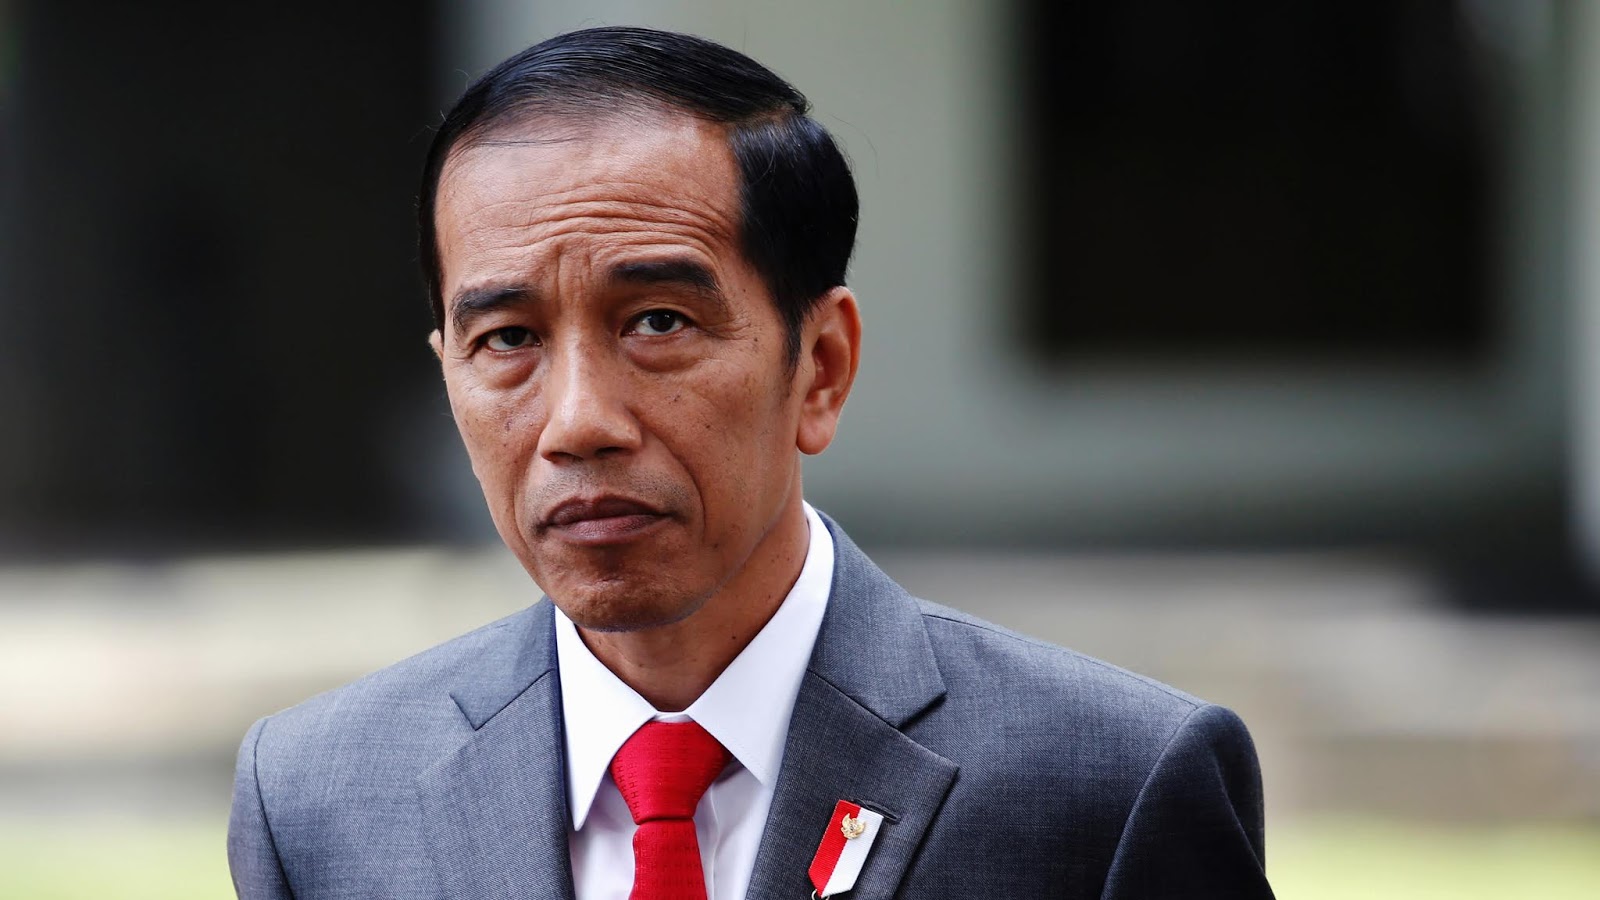 Resmi, Jokowi Dilaporkan ke Bawaslu Soal Tanah